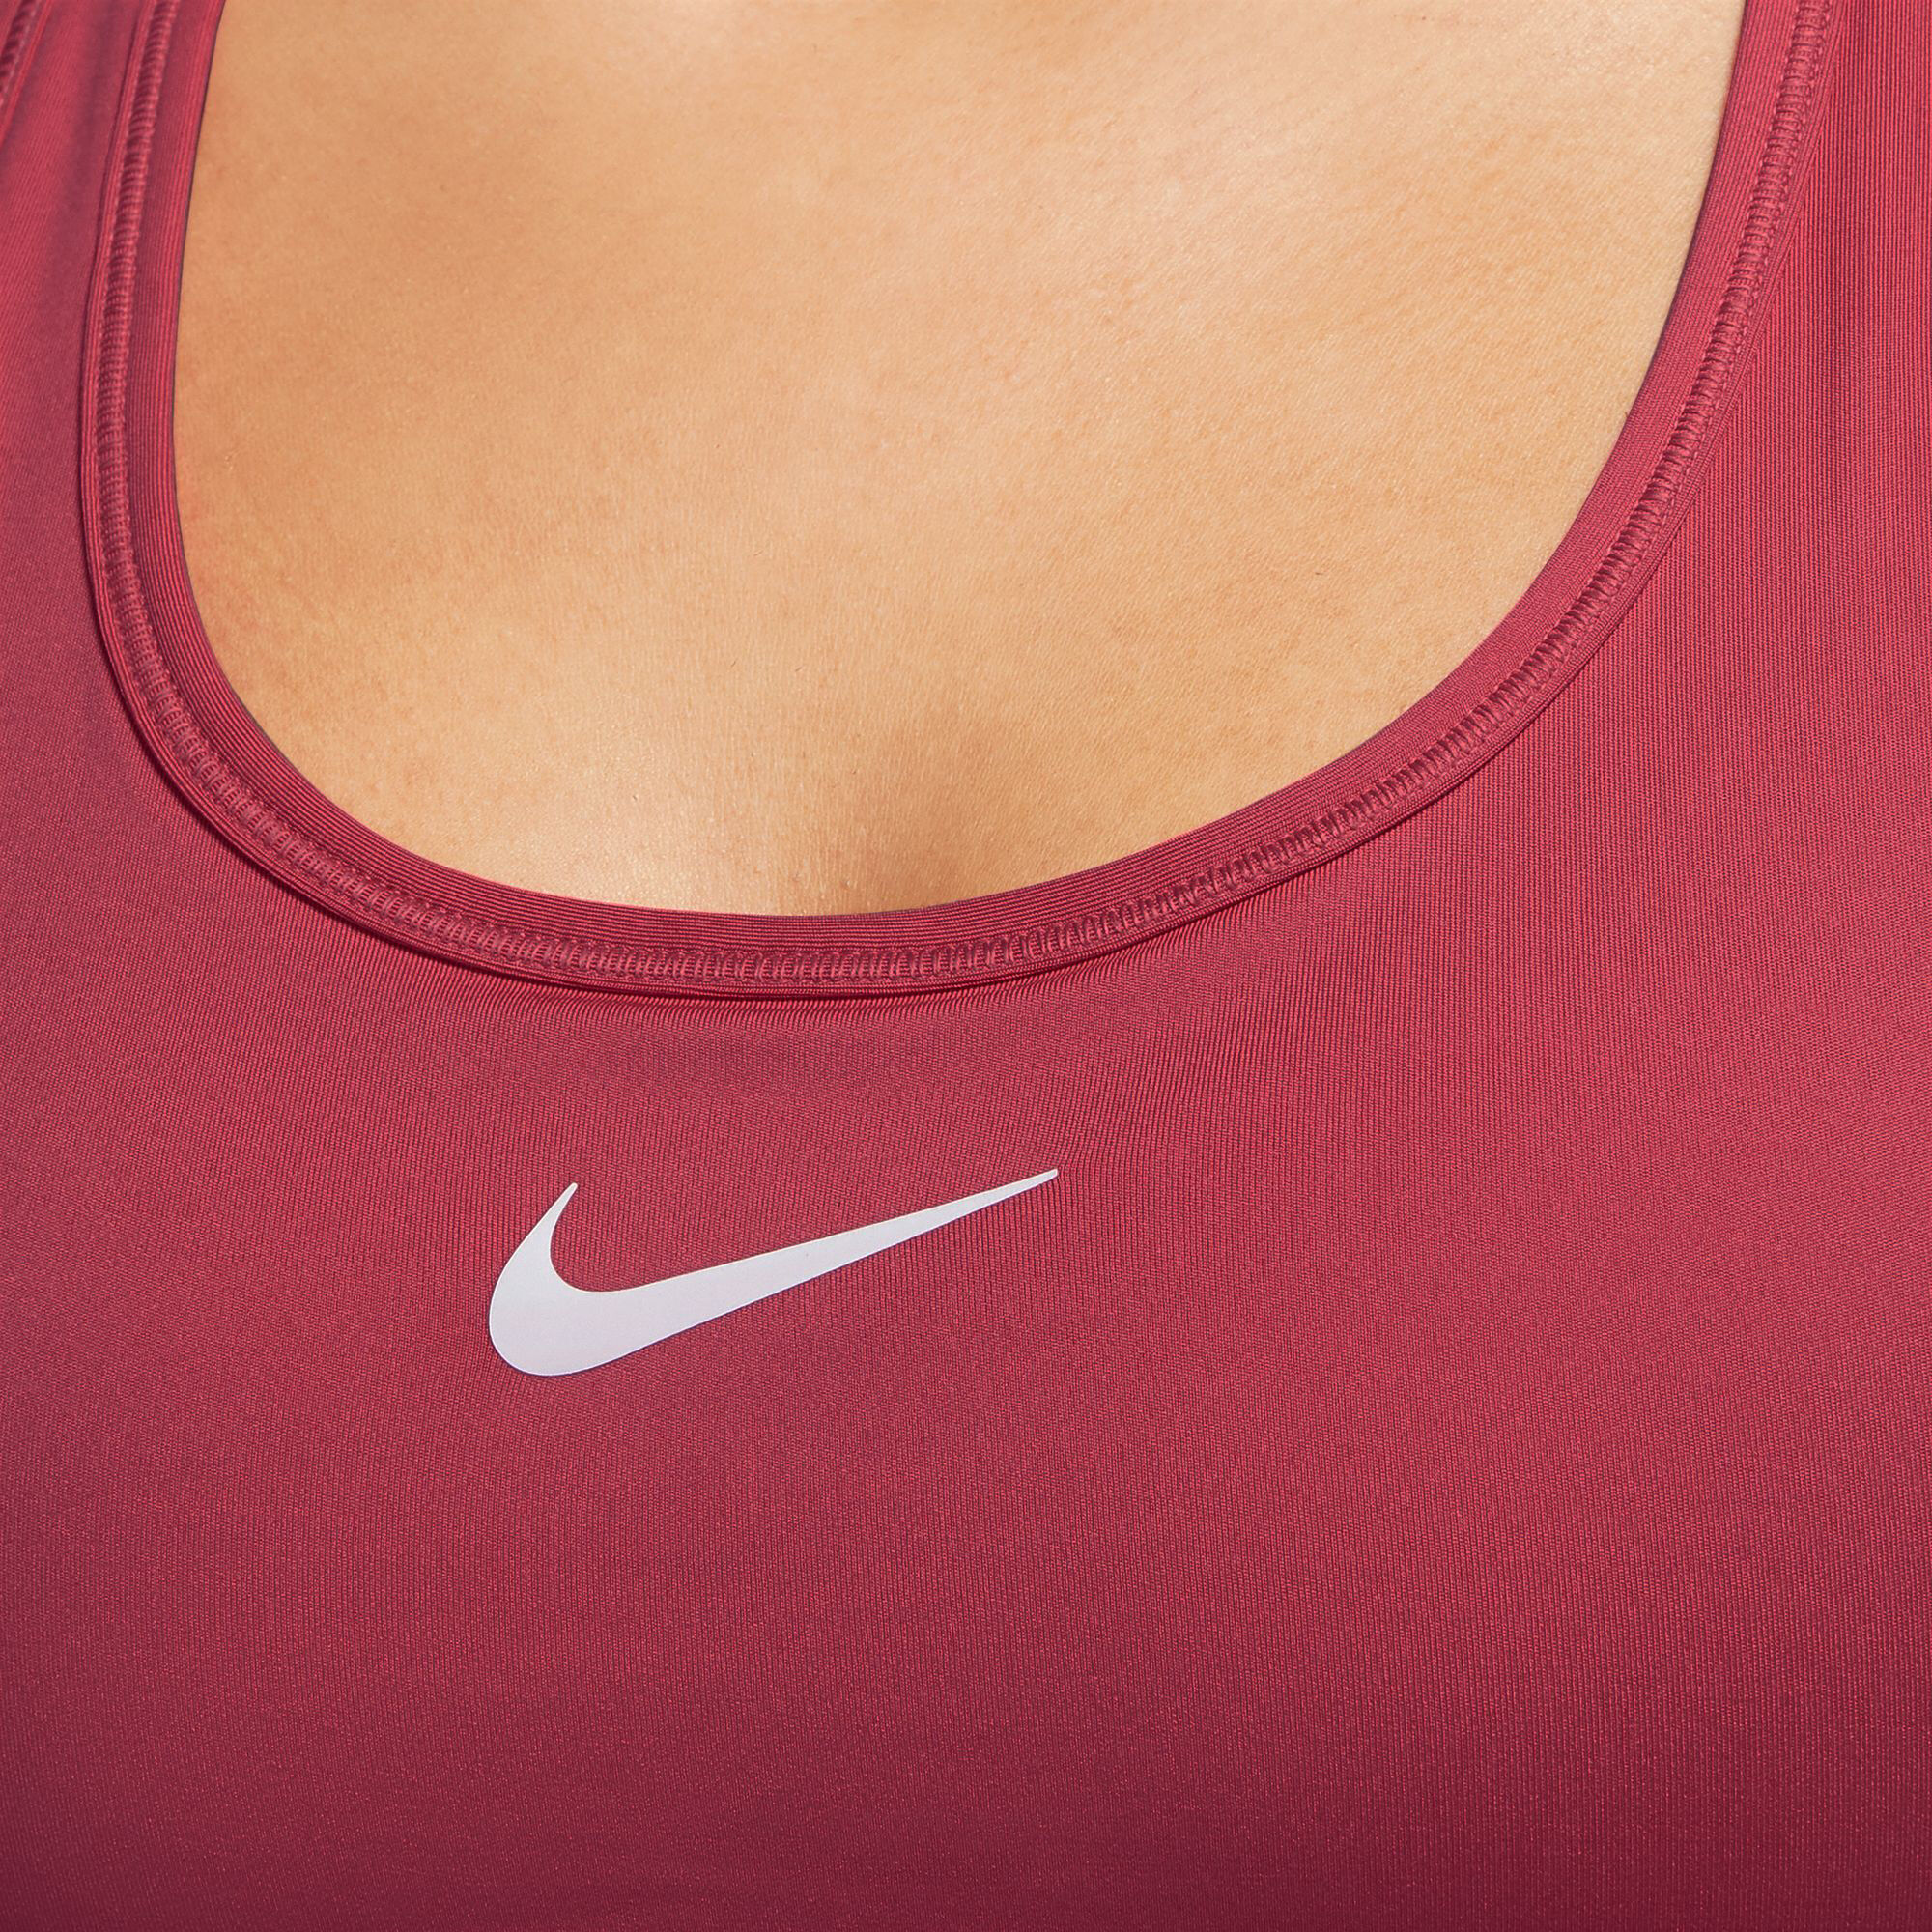 Pink, Sports bras, Sportswear, Women, Nike